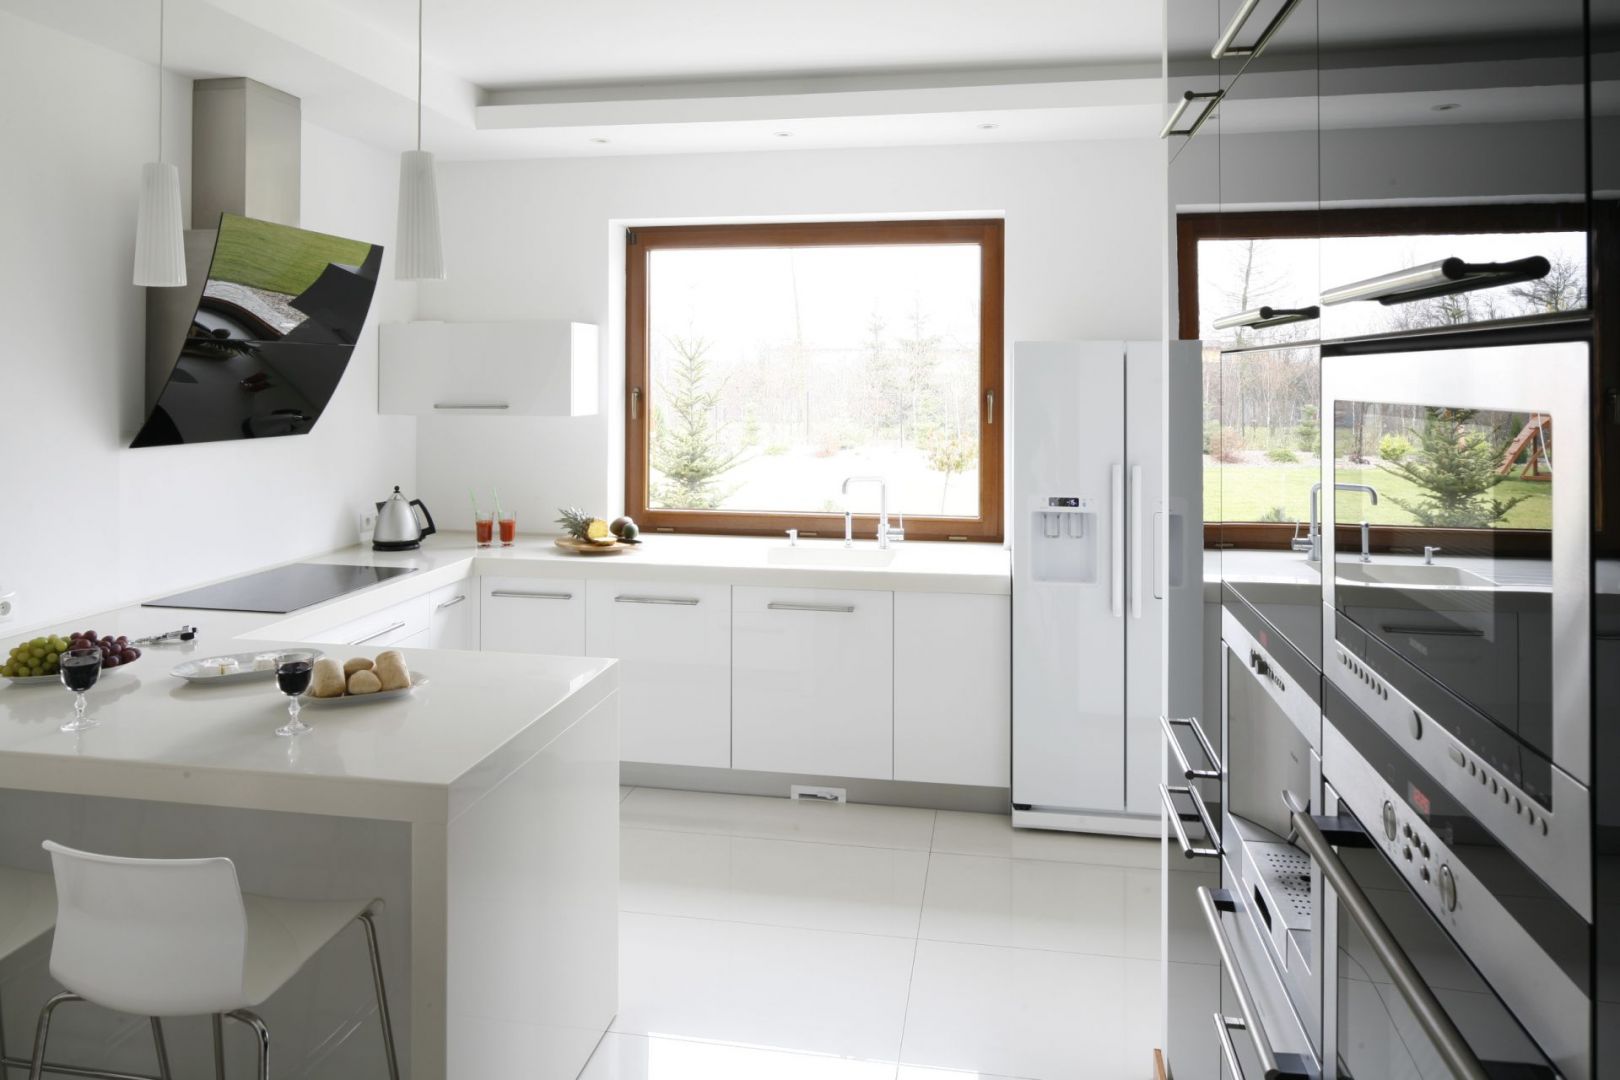 Popularnym rozwiązaniem, szczególnie  w kuchniach w domach jednorodzinnych, jest umieszczanie strefy zmywania pod oknem. Projekt: Piotr Stanisz. Fot. Bartosz Jarosz